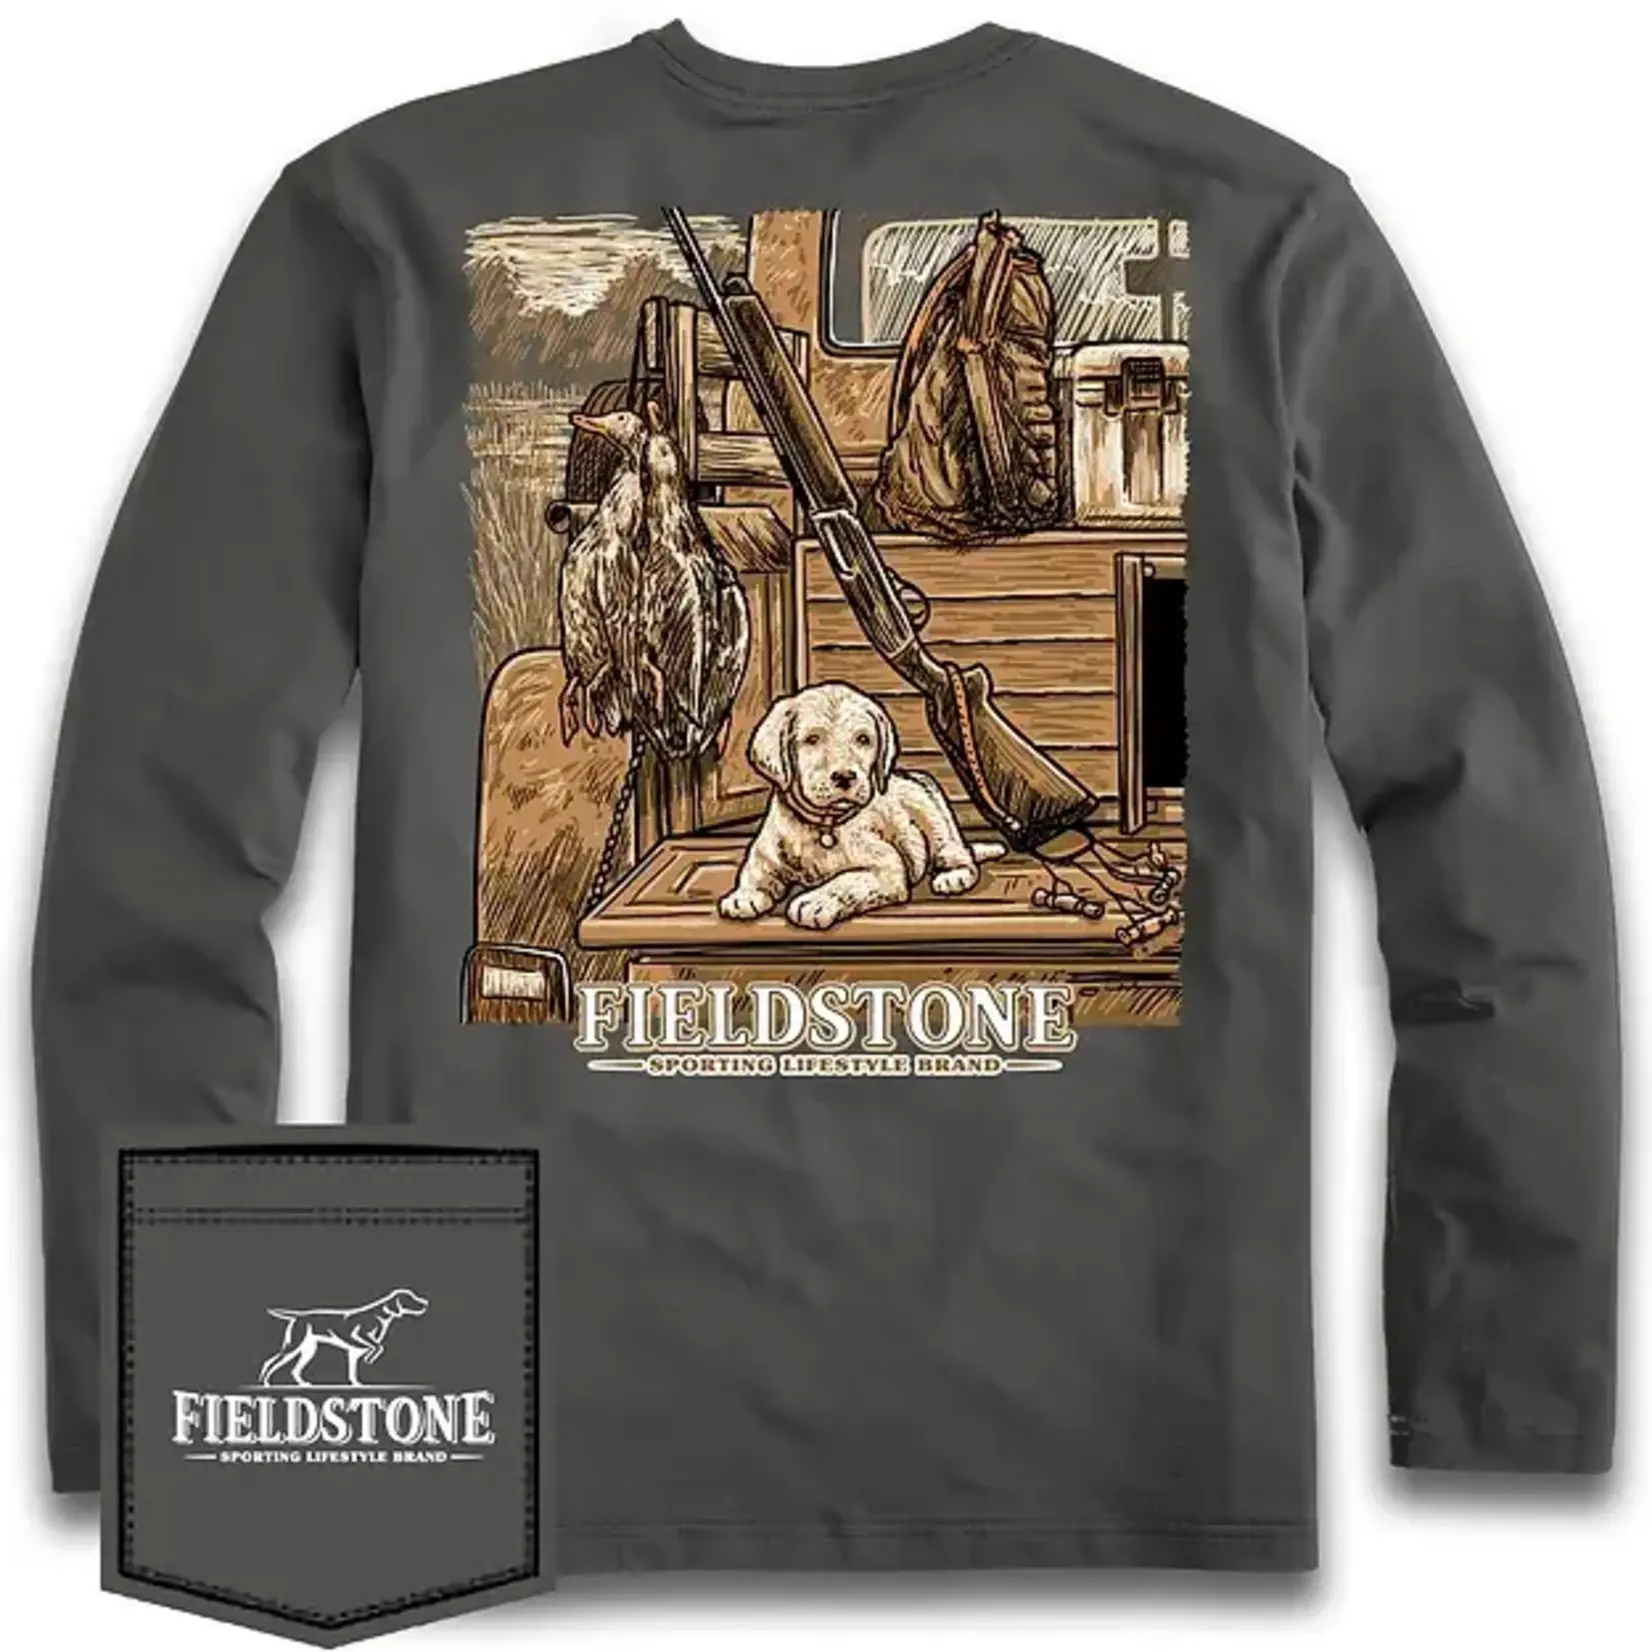 Fieldstone Fieldstone Apparel Youth Puppy in Truck L/S TEE Shirt